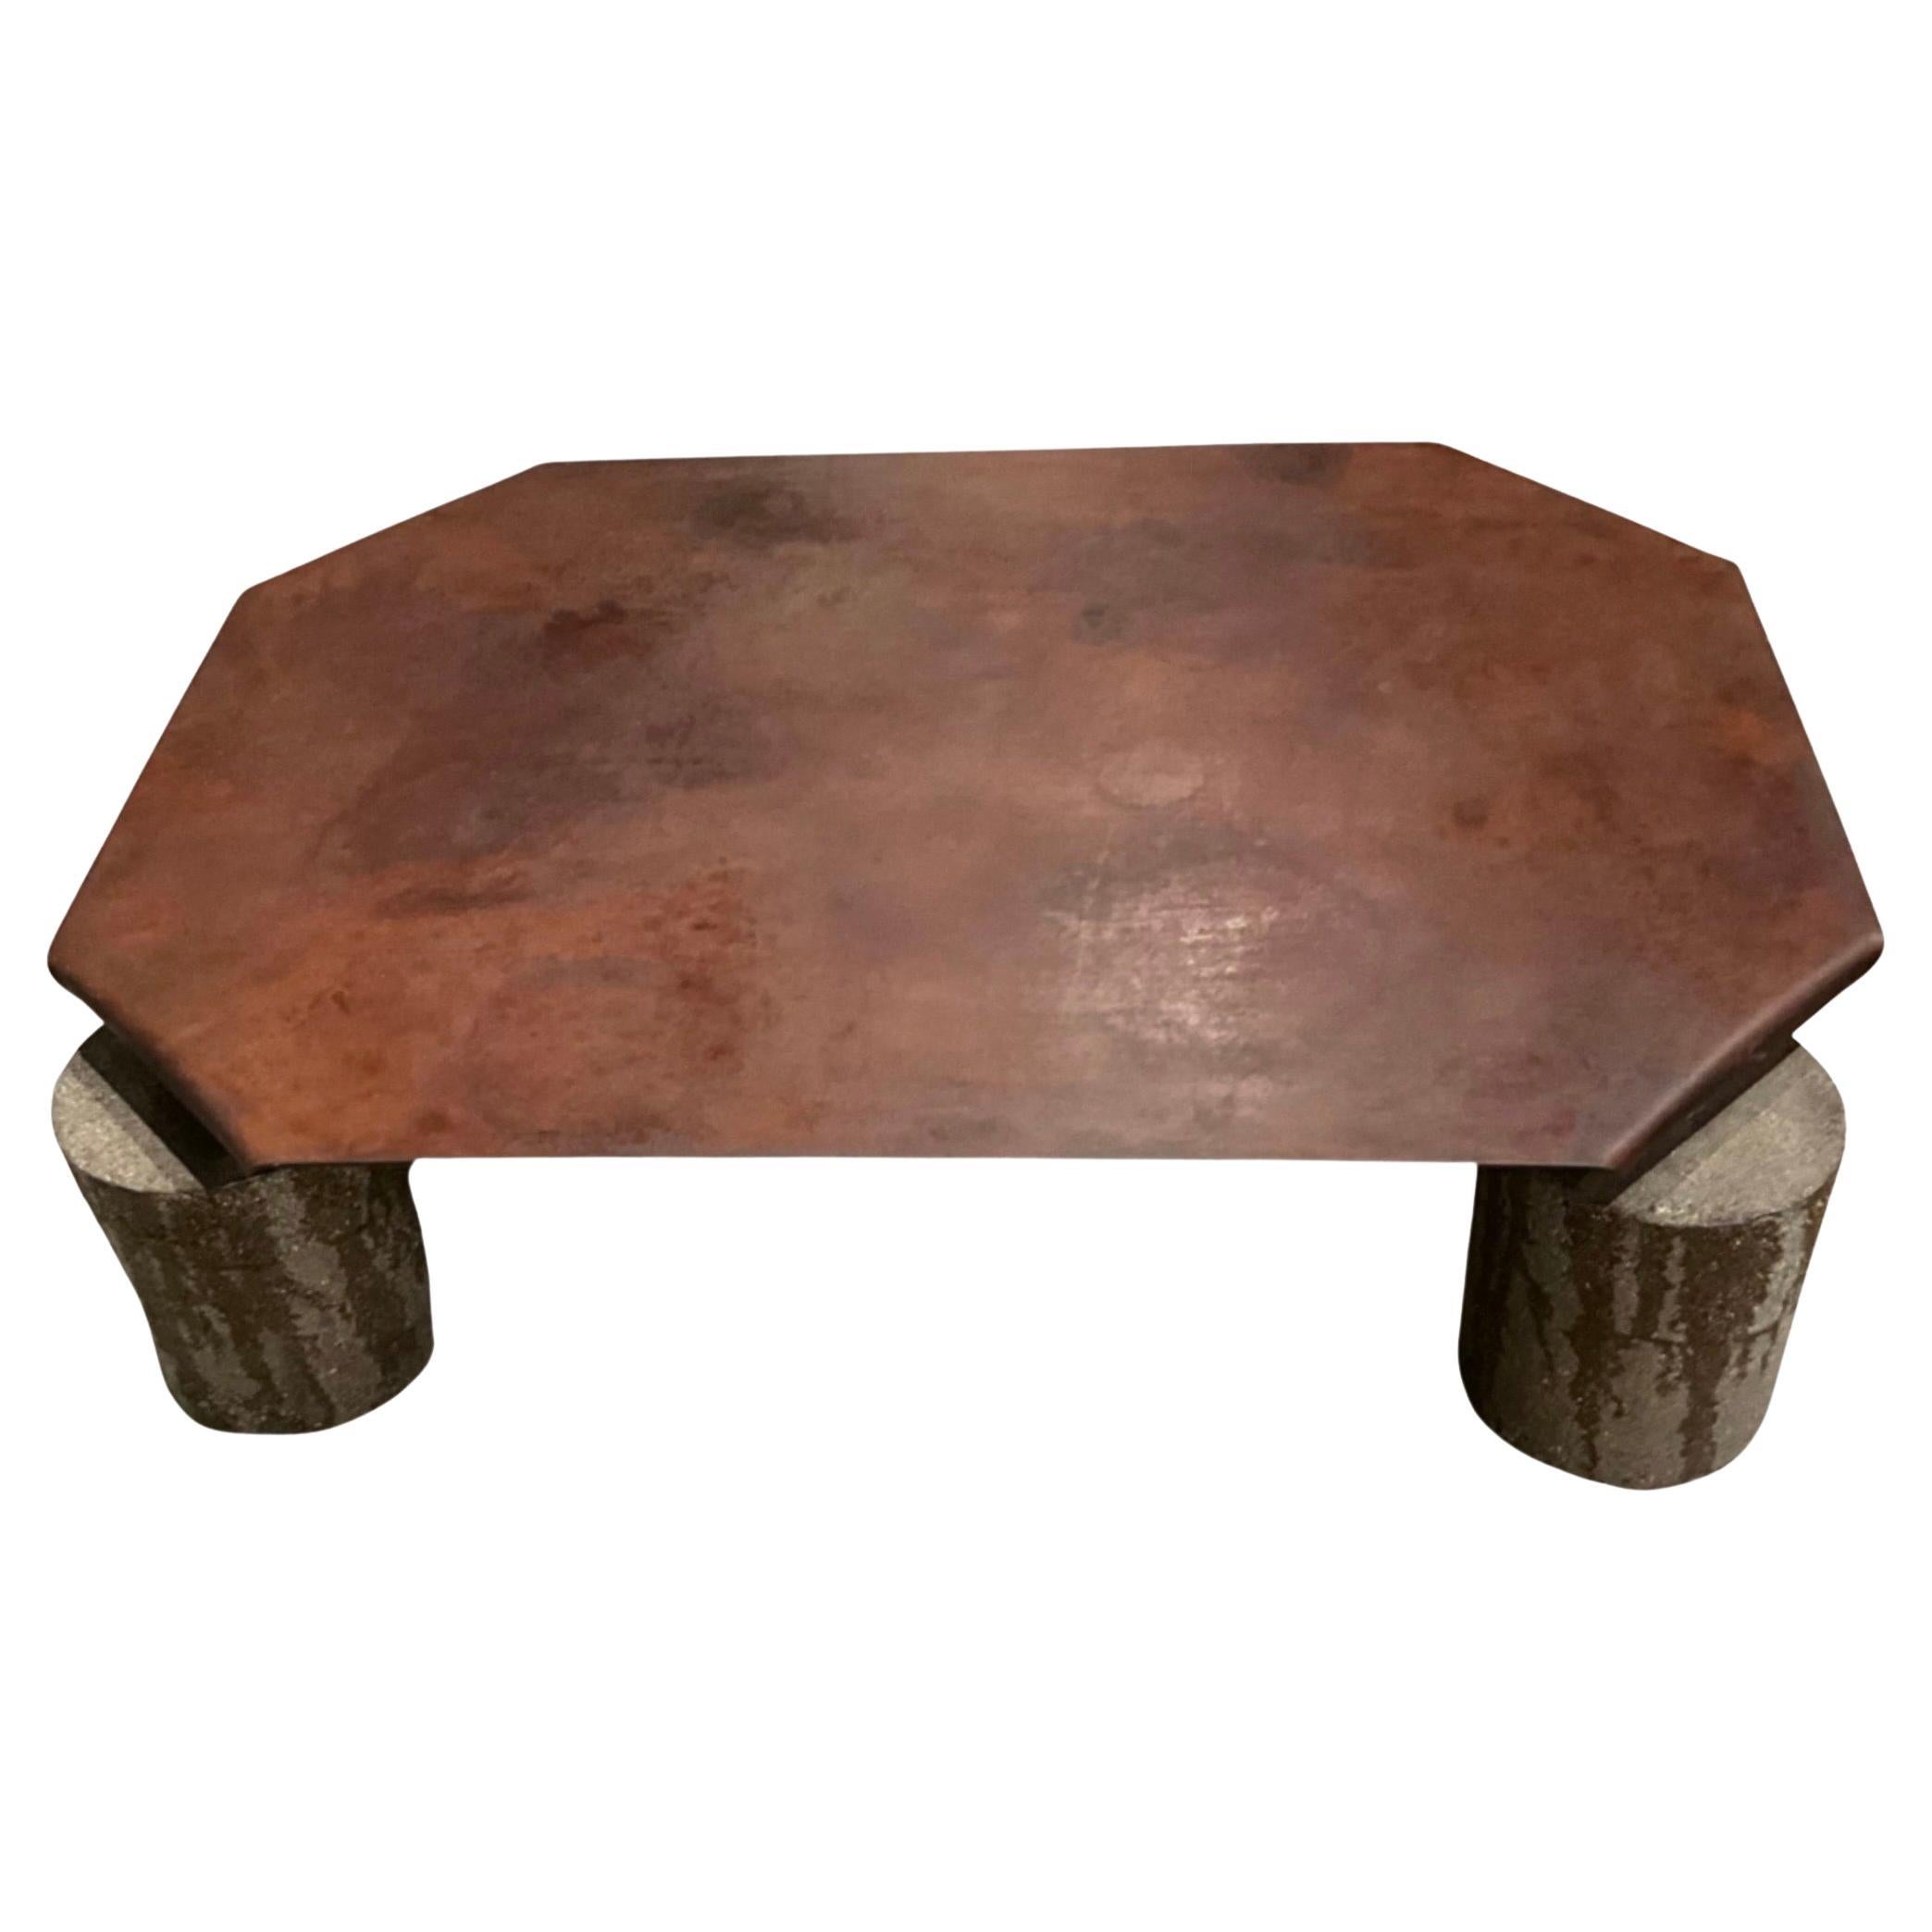 Table d'angle pliée en métal sur pieds en béton, style industriel

Grande table rectangulaire pour l'intérieur et l'extérieur

Métal rustique à patine naturelle

     Hauteur : 18